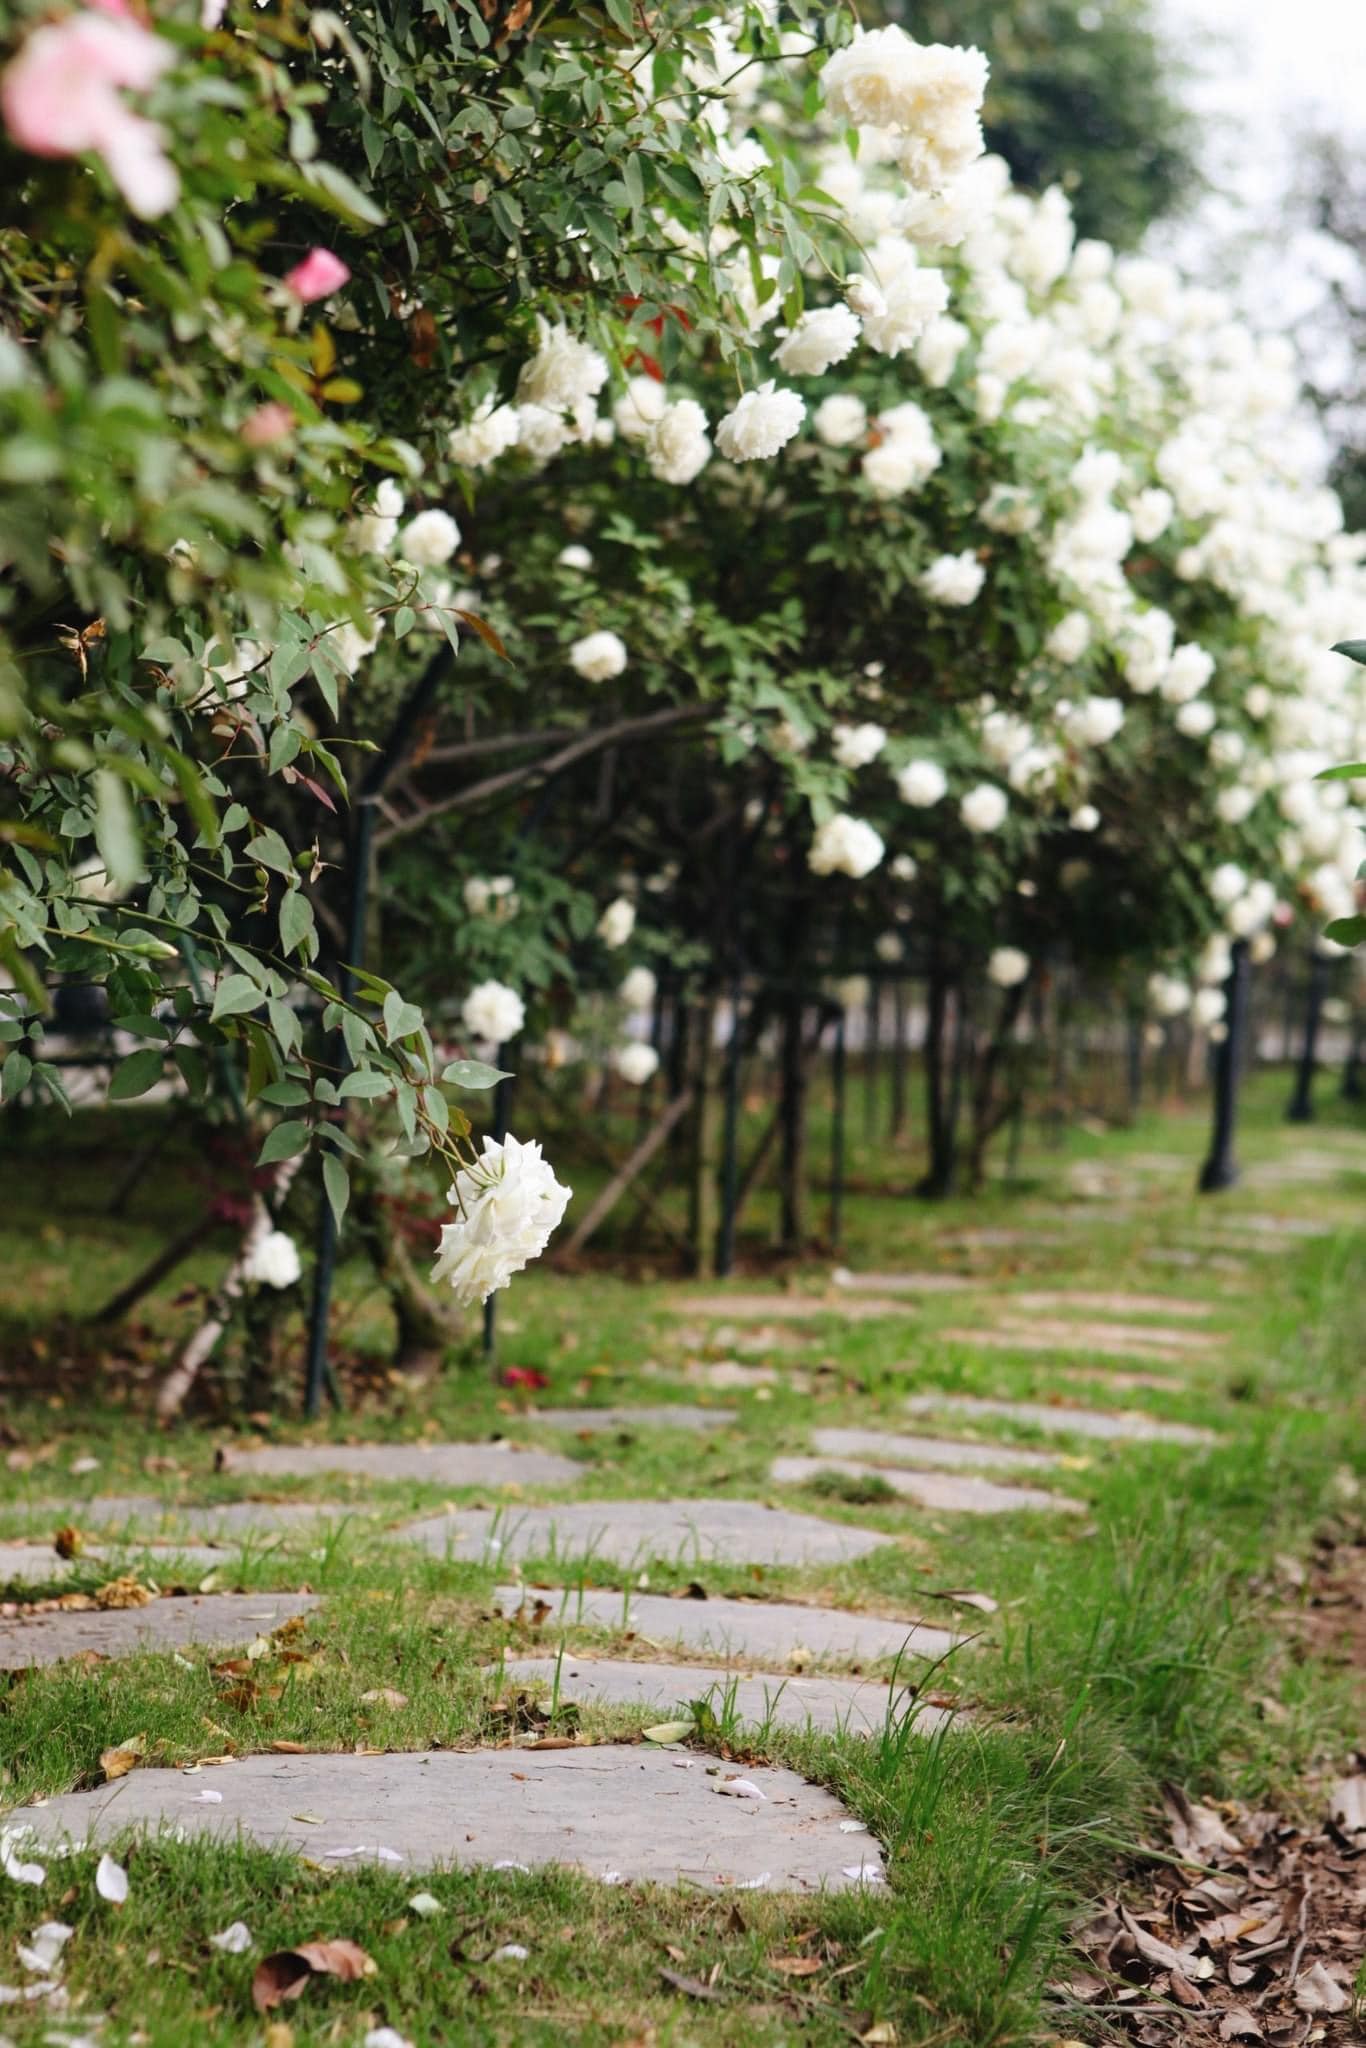 Trường đại học gây sốt với vườn hồng hàng trăm loại đẹp như cổ tích: Chỉ ngắm thôi cũng đã đầy cảm hứng học tập- Ảnh 1.